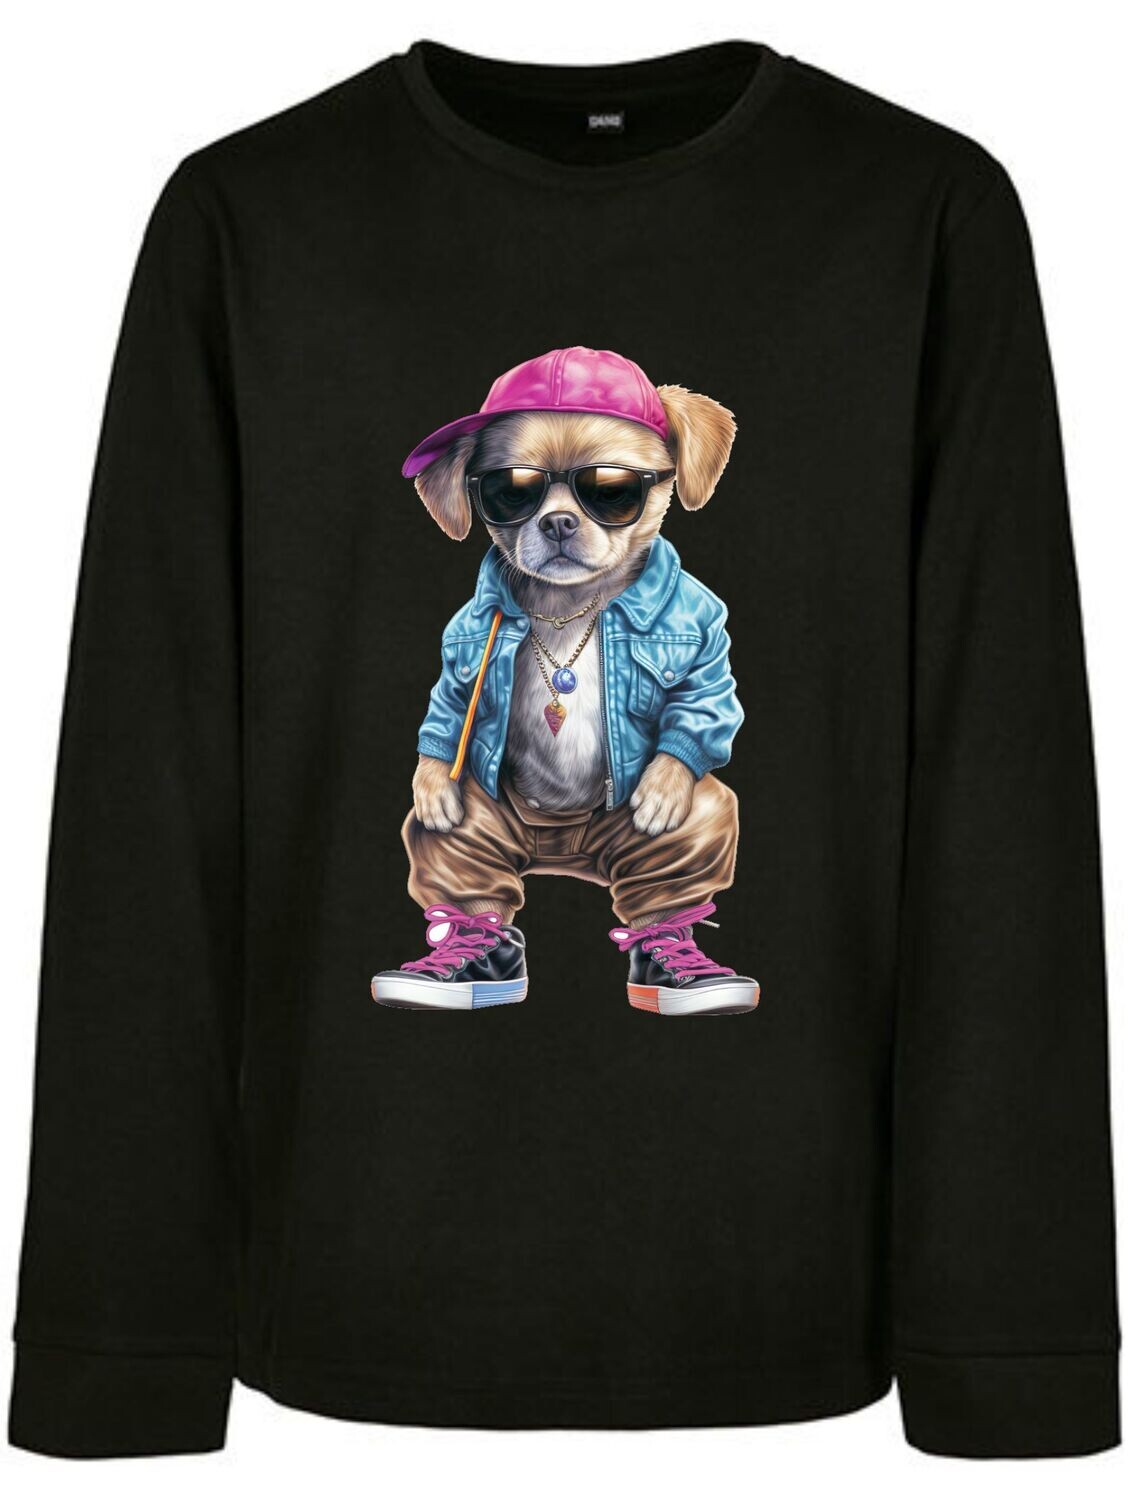 Sweatshirt Dog Cool